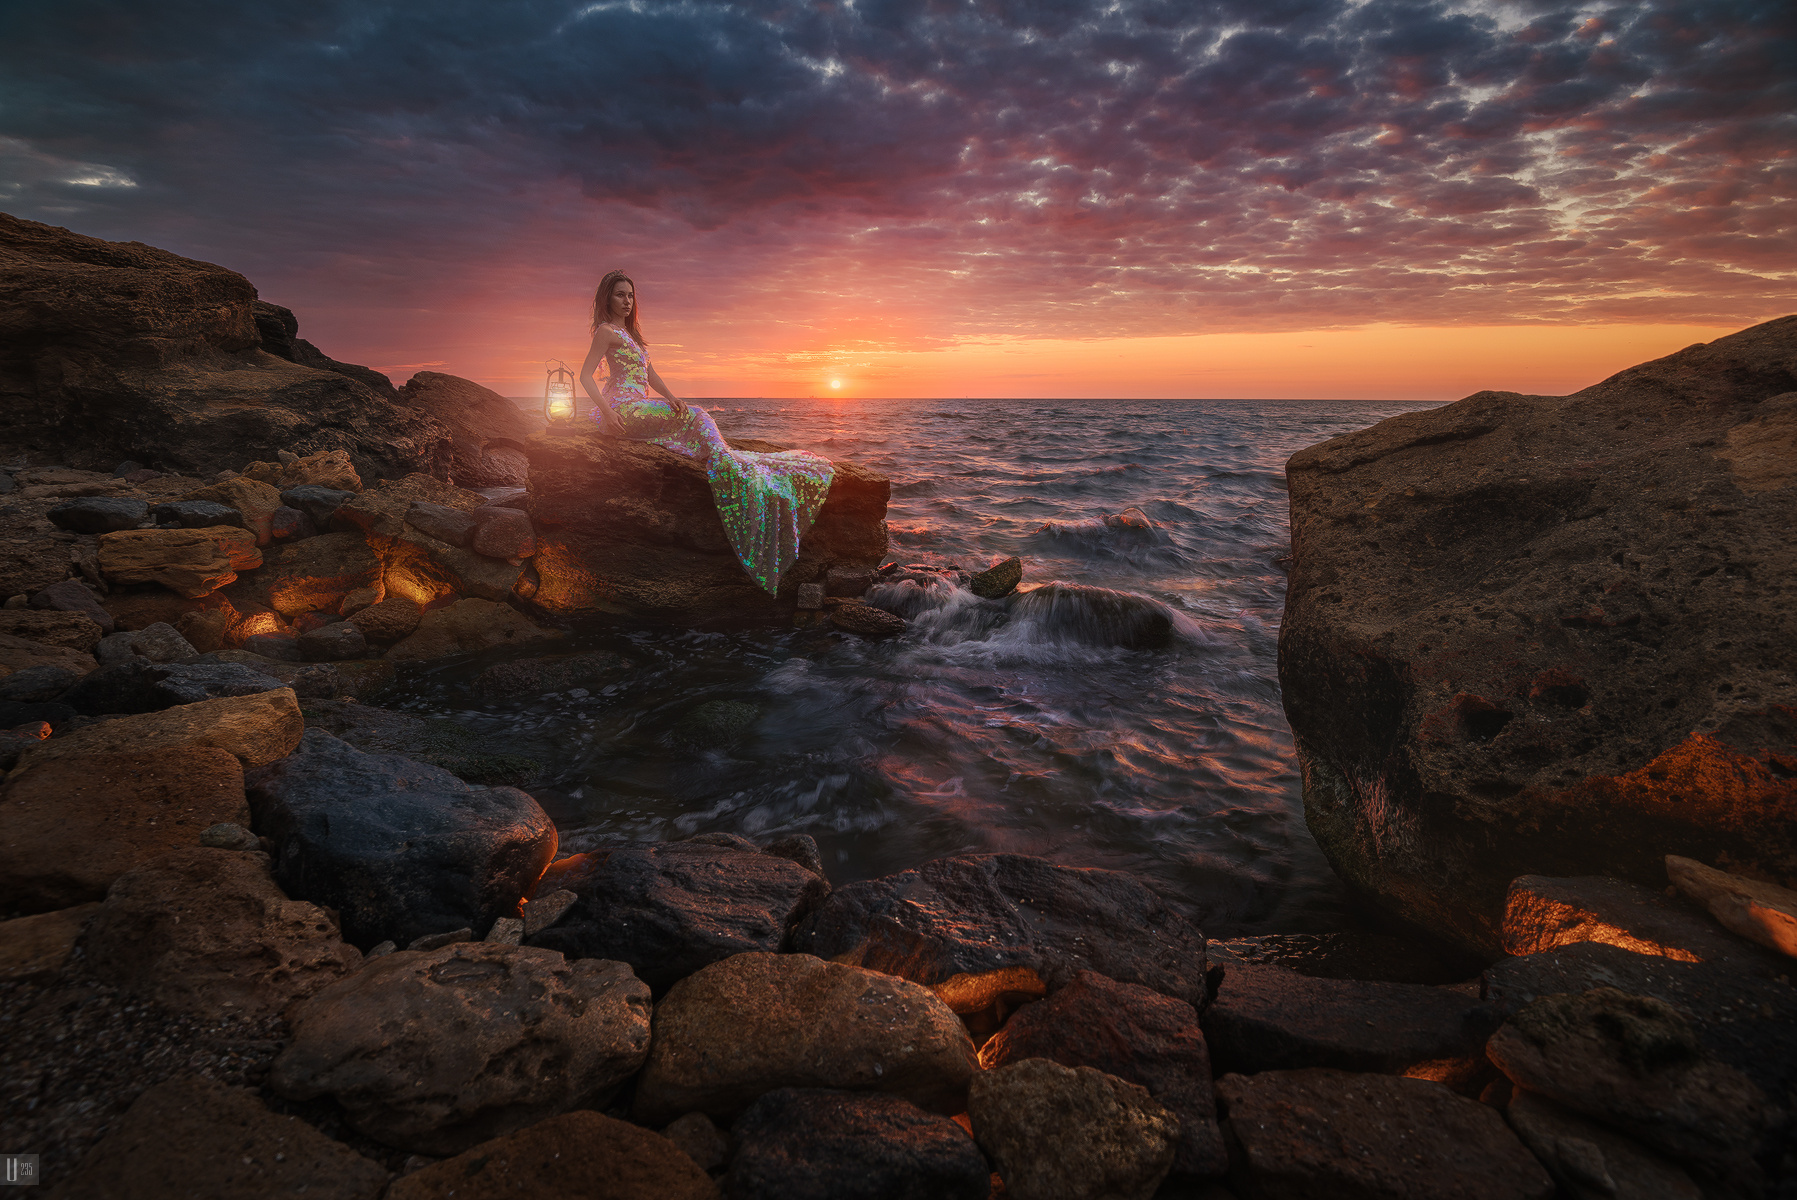 Сказка у моря Uranus235 nightphotoua fine art портрет девушка русалка платье корона фонарь пейзаж небо тучи облака солнце море волны камни берег свет